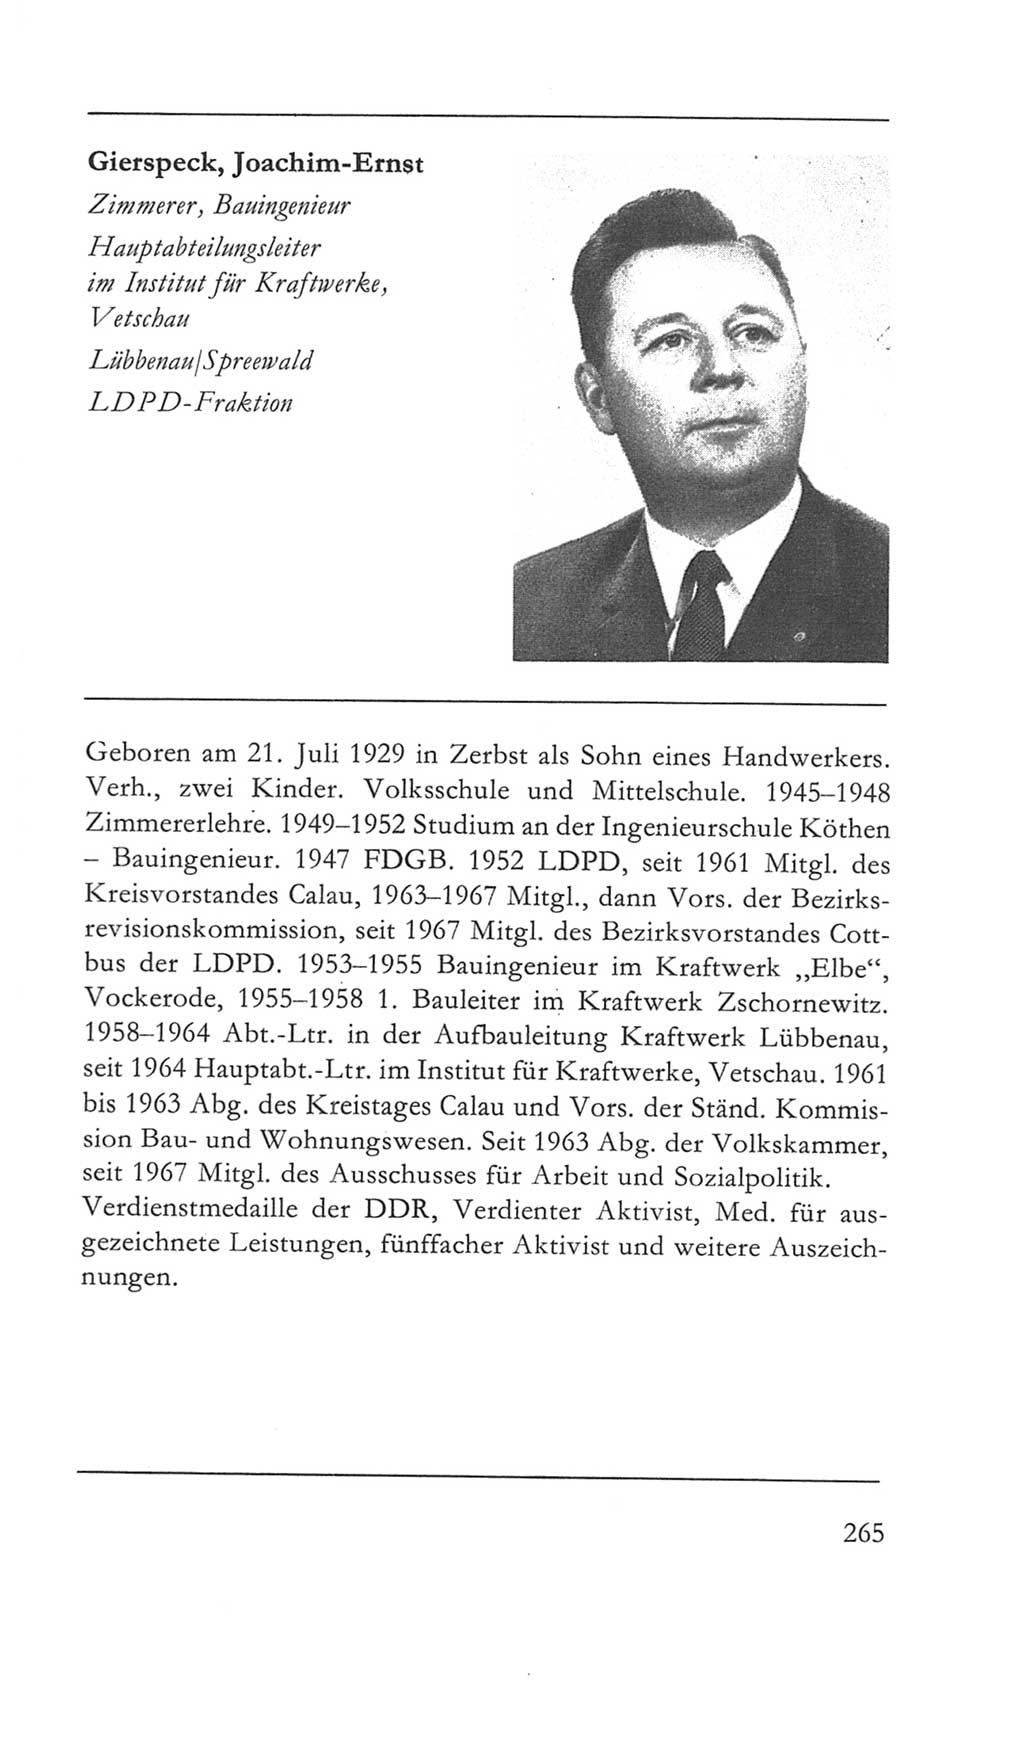 Volkskammer (VK) der Deutschen Demokratischen Republik (DDR) 5. Wahlperiode 1967-1971, Seite 265 (VK. DDR 5. WP. 1967-1971, S. 265)